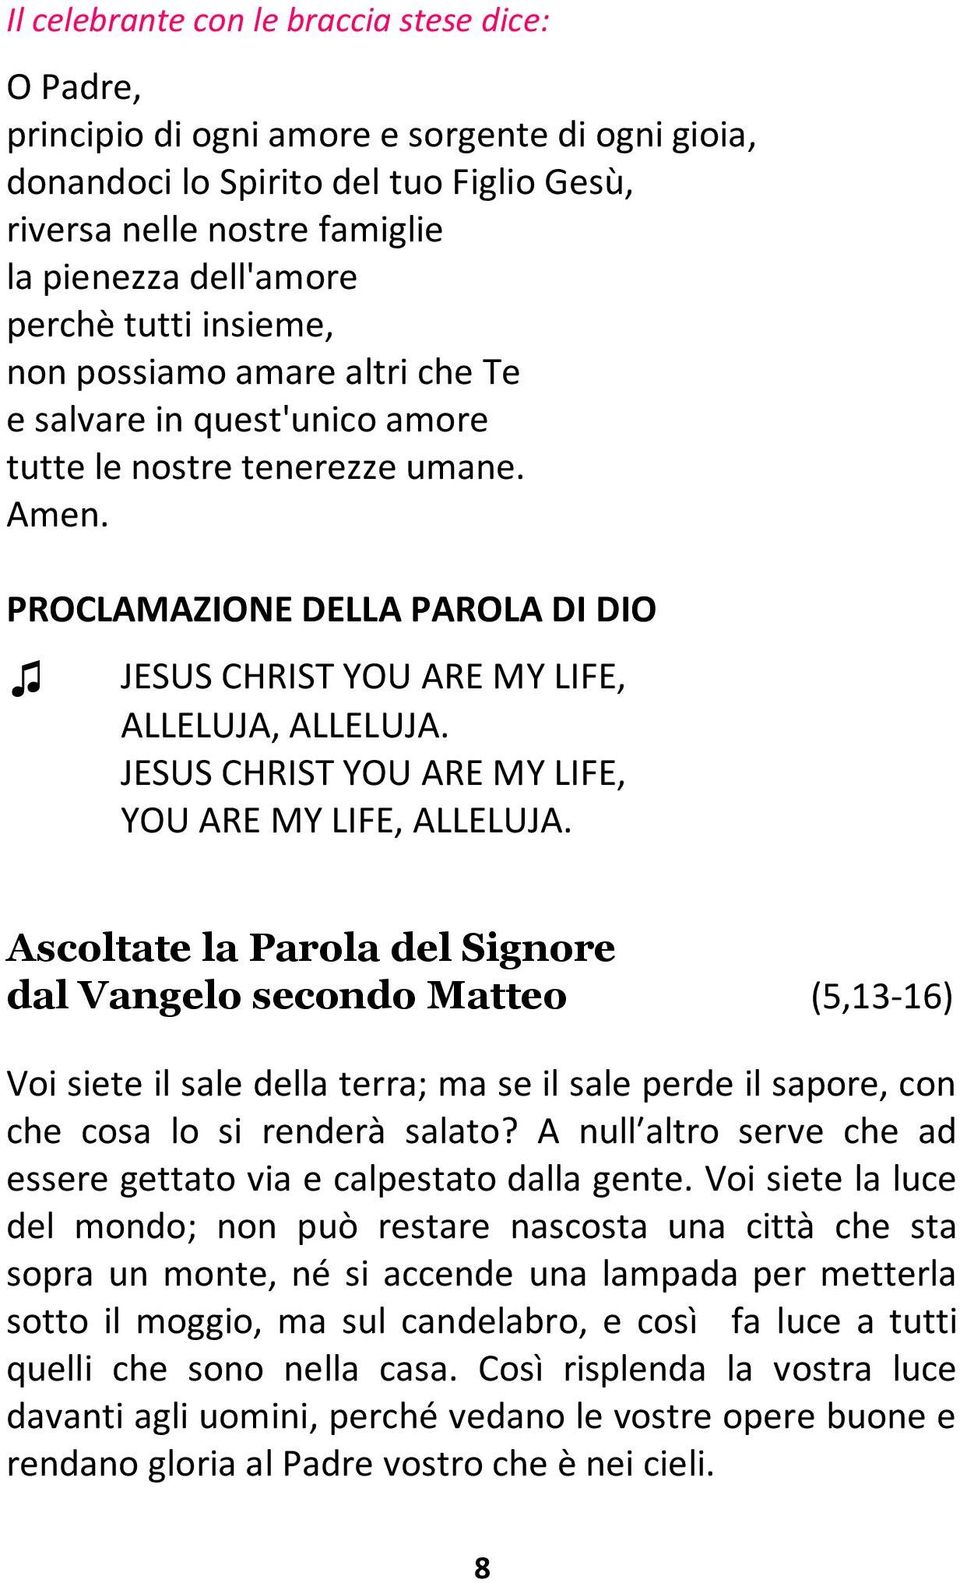 PROCLAMAZIONE DELLA PAROLA DI DIO JESUS CHRIST YOU ARE MY LIFE, ALLELUJA, ALLELUJA. JESUS CHRIST YOU ARE MY LIFE, YOU ARE MY LIFE, ALLELUJA.